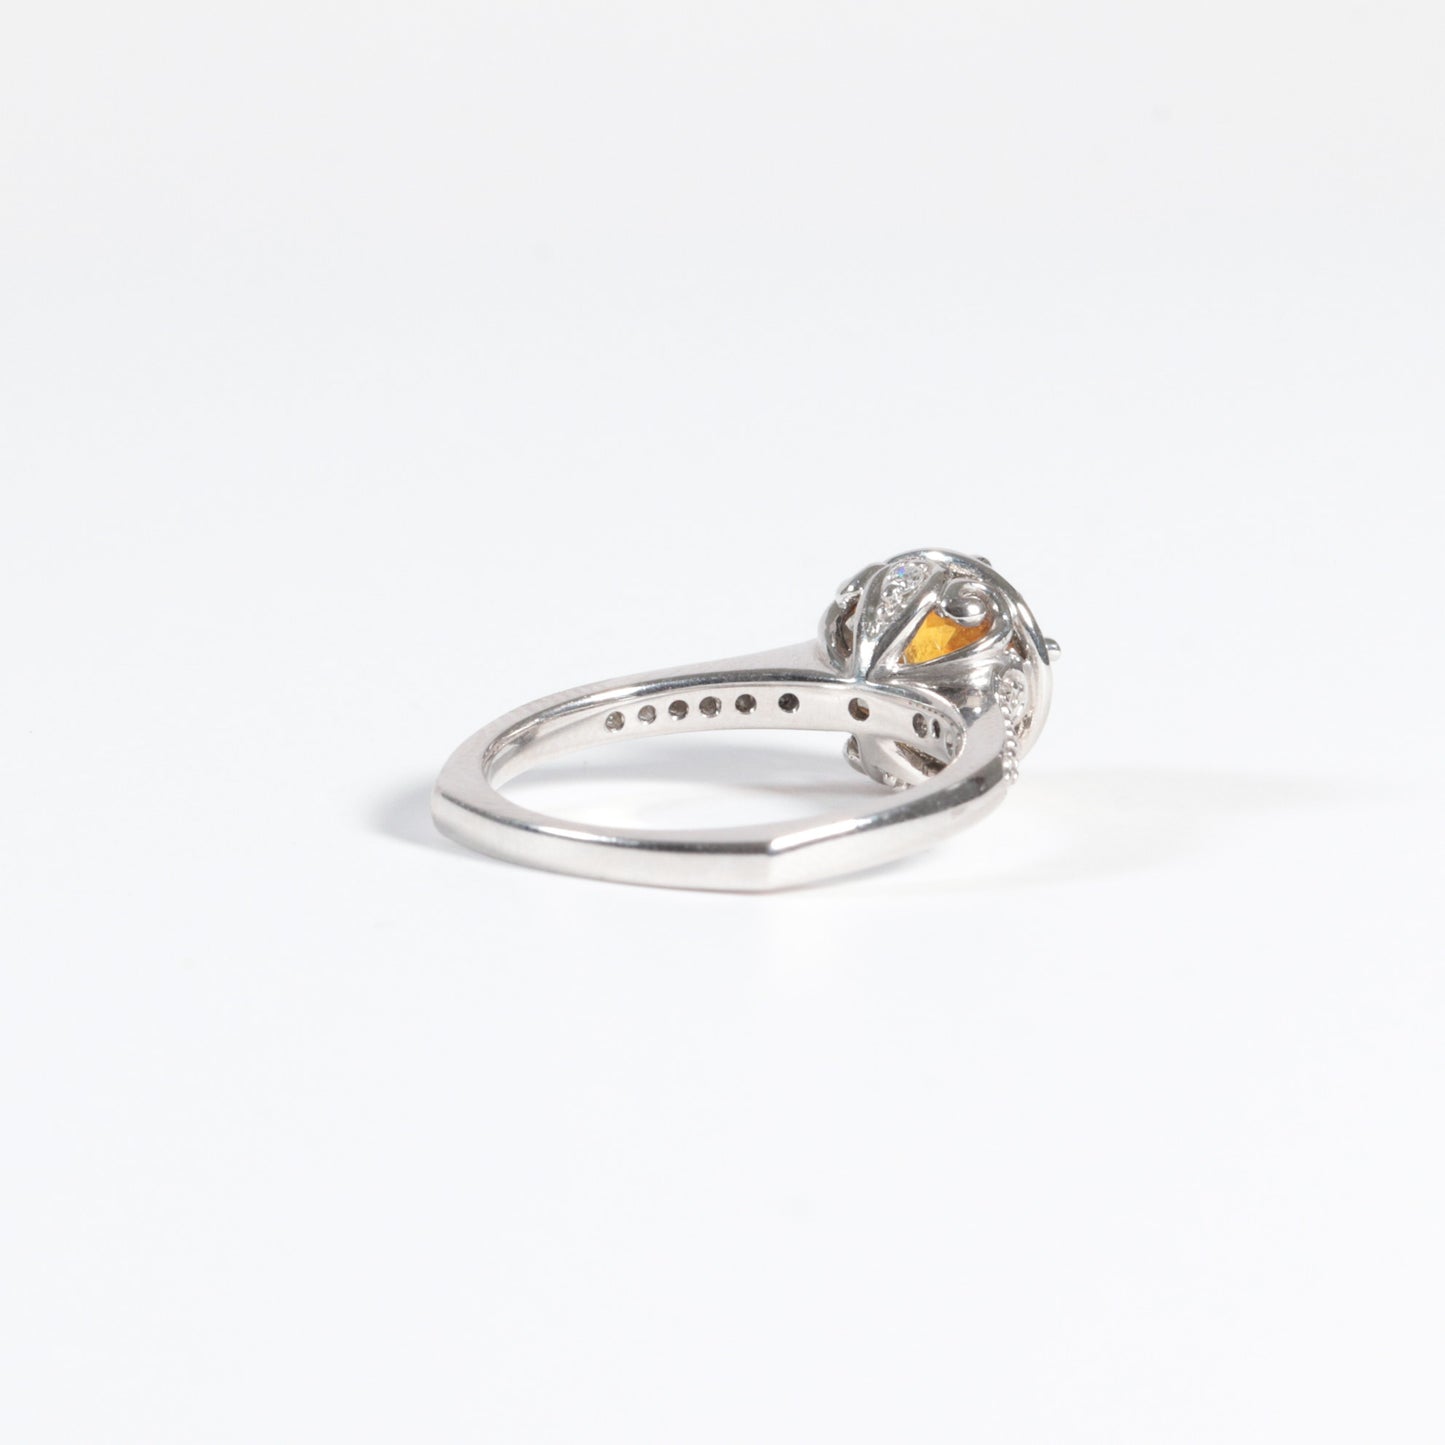 'Phoenix' Montana Sapphire Ring